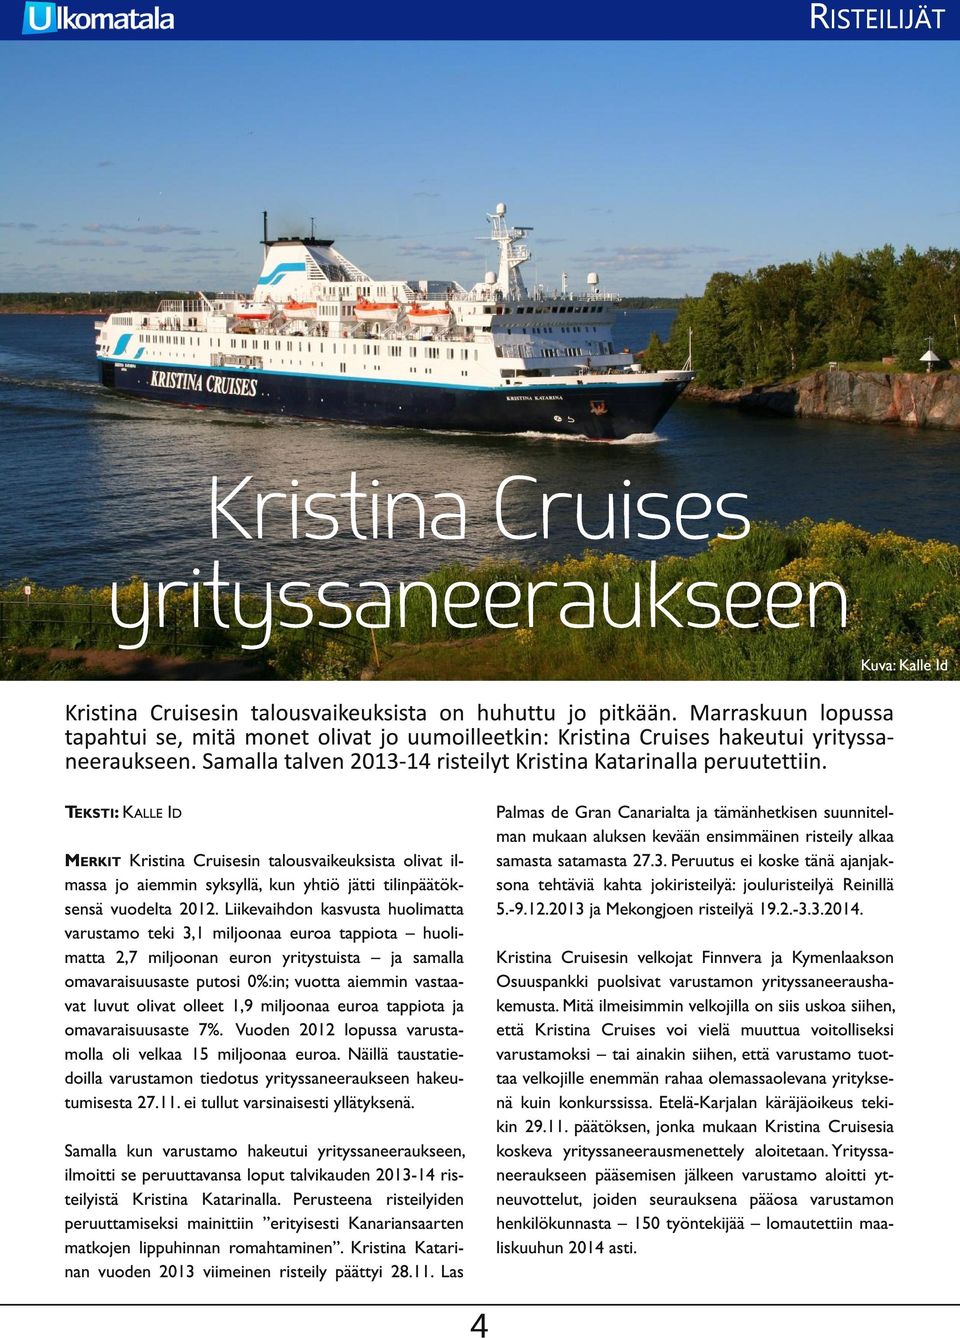 M ERKIT Kristina Cruisesin talousvaikeuksista olivat il- massa jo aiemmin syksyllä, kun yhtiö jätti tilinpäätöksensä vuodelta 201 2.